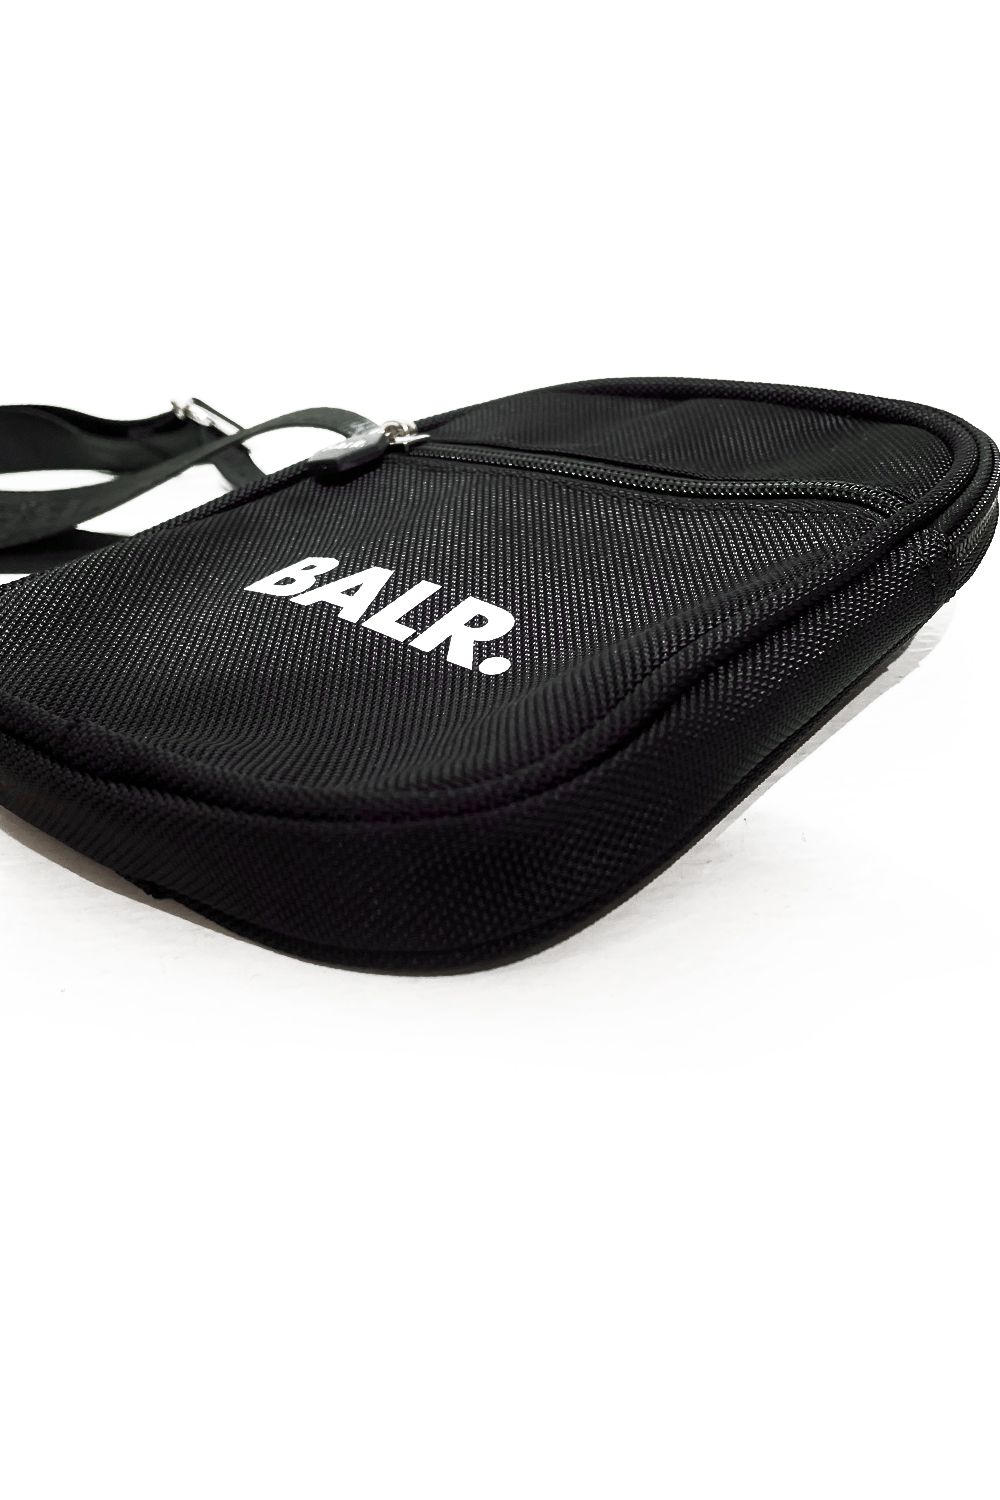 BALR. - U-Series Small Cross Body Bag / ユーシリーズ スモール ...